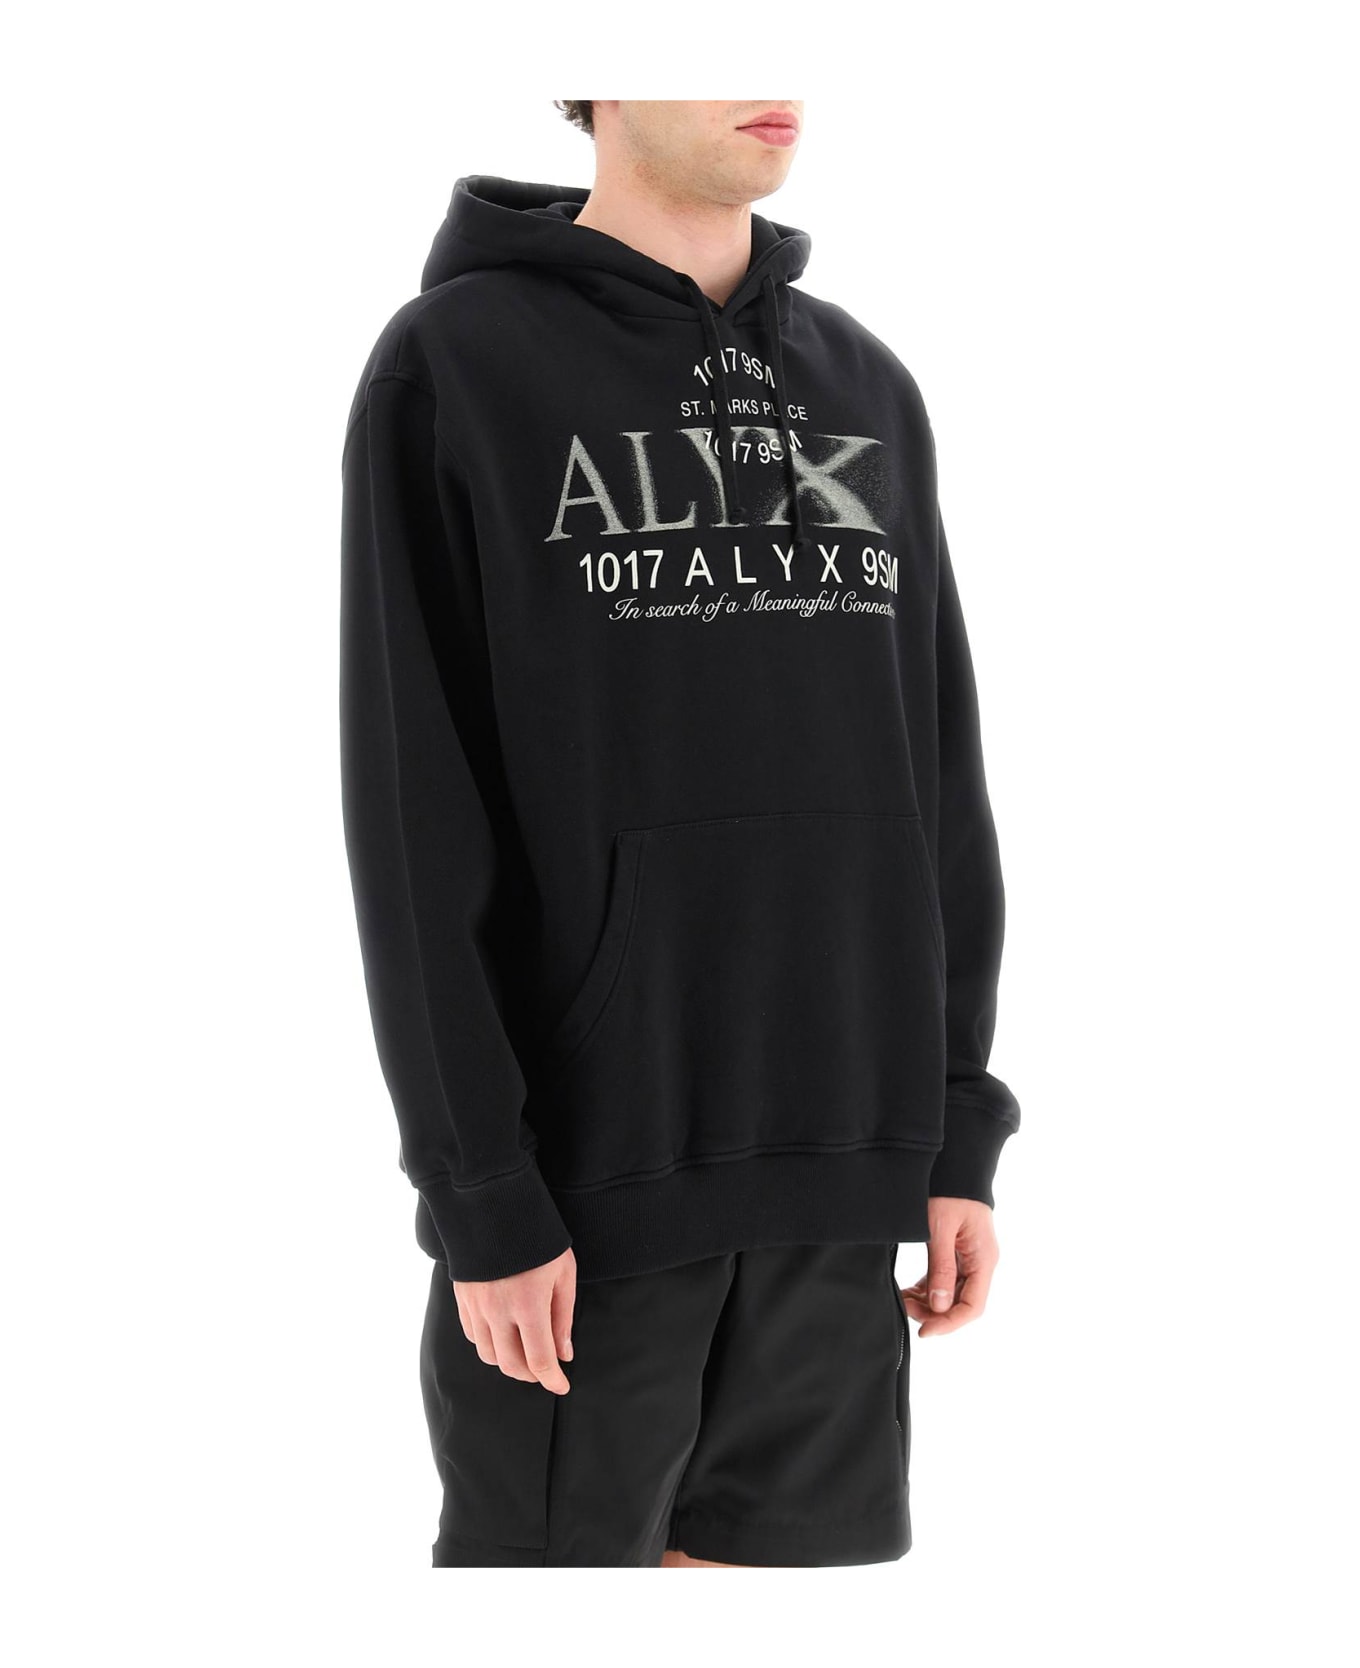 1017 ALYX 9SM Hoodie With Print - BLACK (Black)